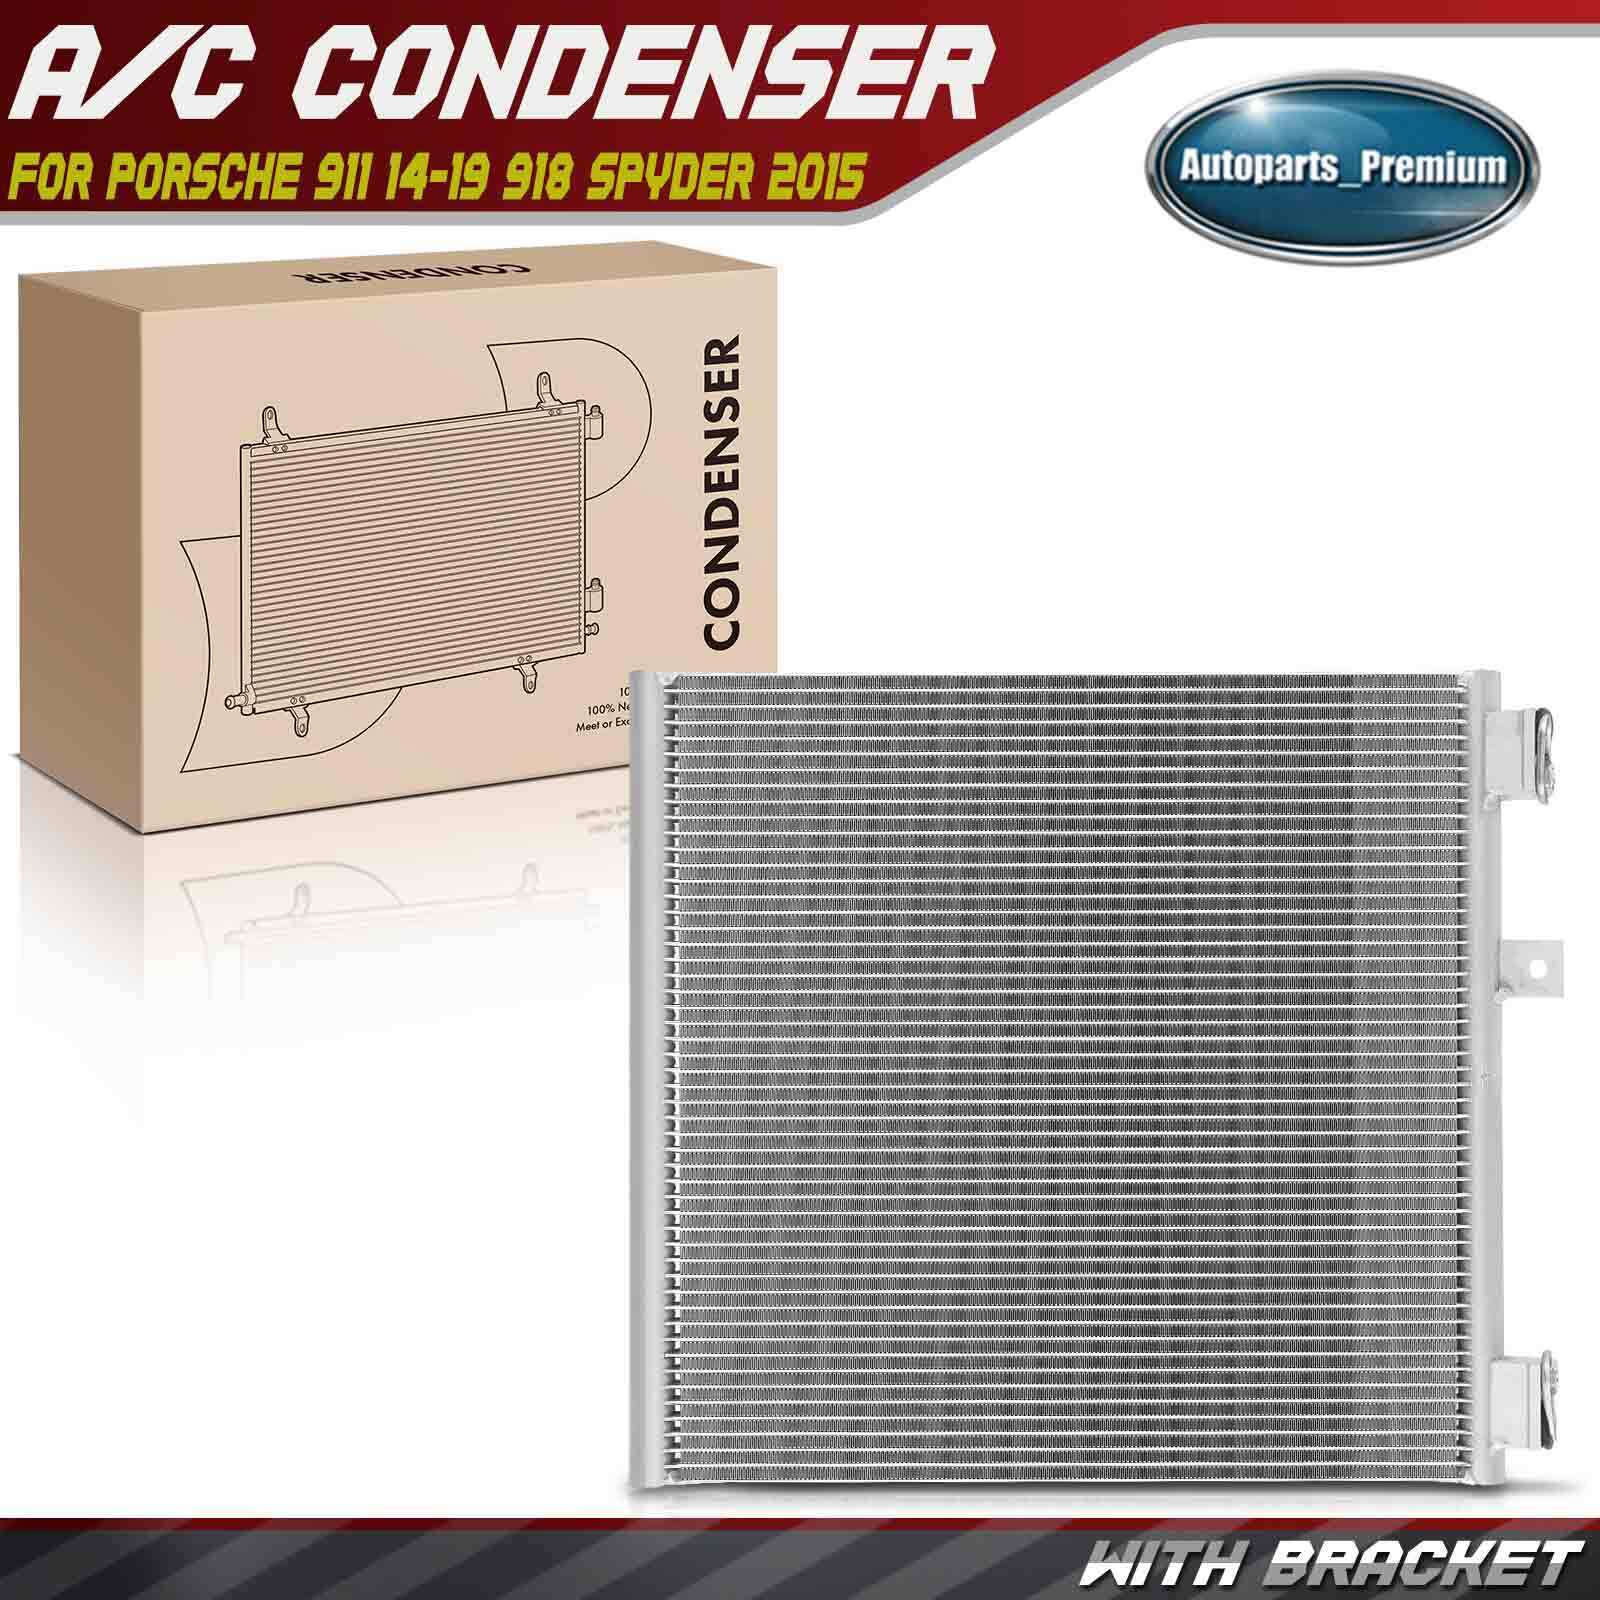 A/C Air Conditioning Condenser w/ Bracket for Porsche 918 Spyder 2015 911 14-19